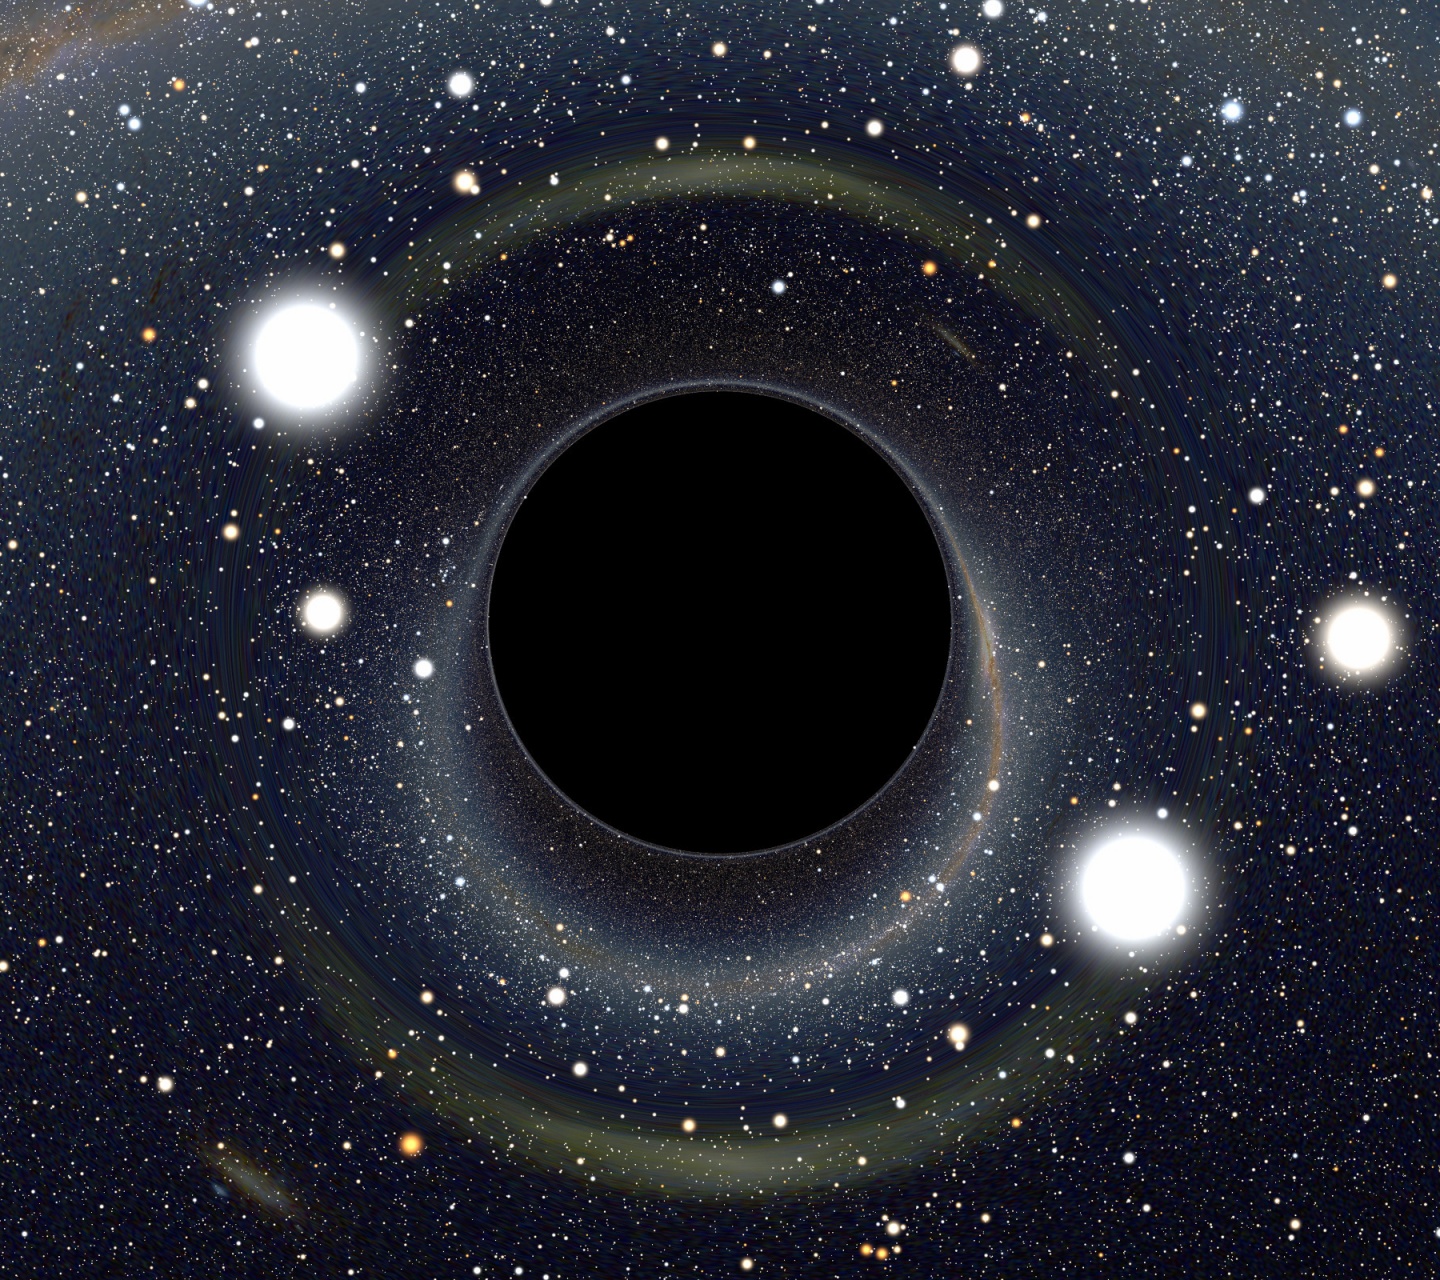 Black Hole Nasa